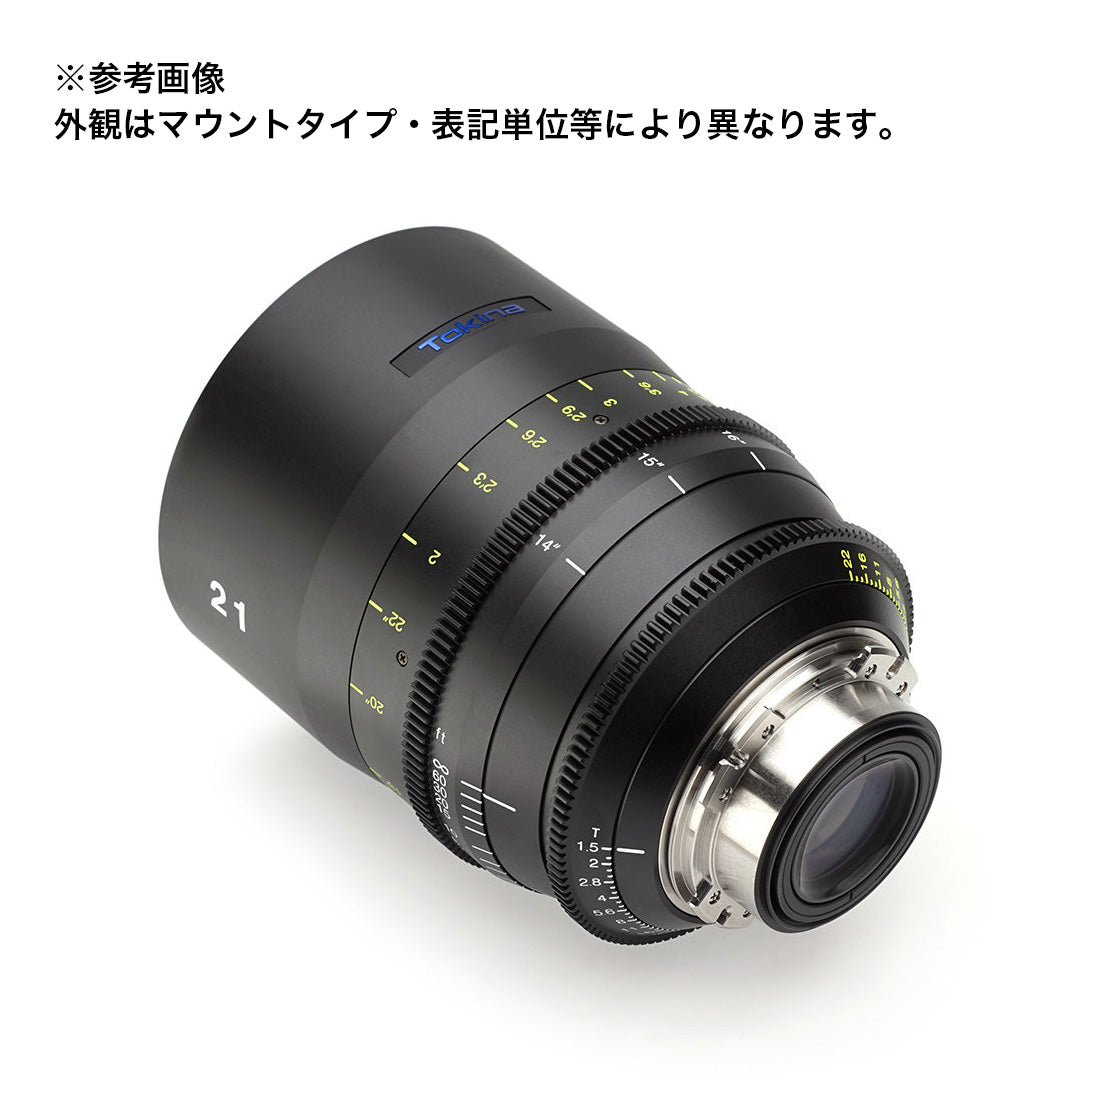 Tokina(トキナー) シネマプライムレンズ VISTA 21mm T1.5CINEMA LENS EFマウント フィート表記 [264242]